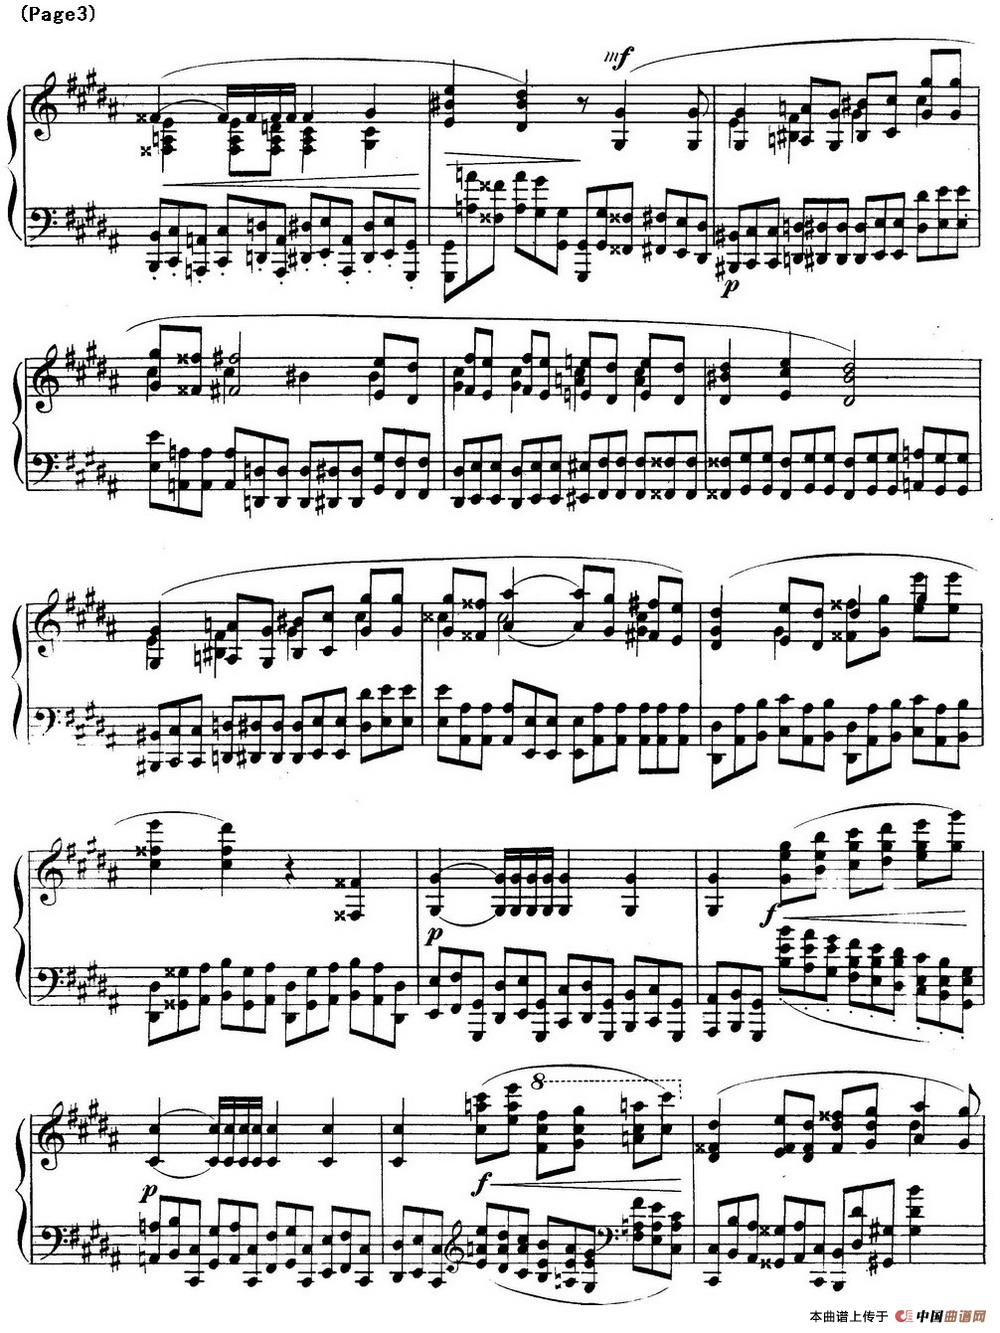 斯克里亚宾12首钢琴练习曲 Op8（No.9 Alexander Scriabin Etudes）(1)_Scriabin Etude Op.8 No.9_页面_3.jpg